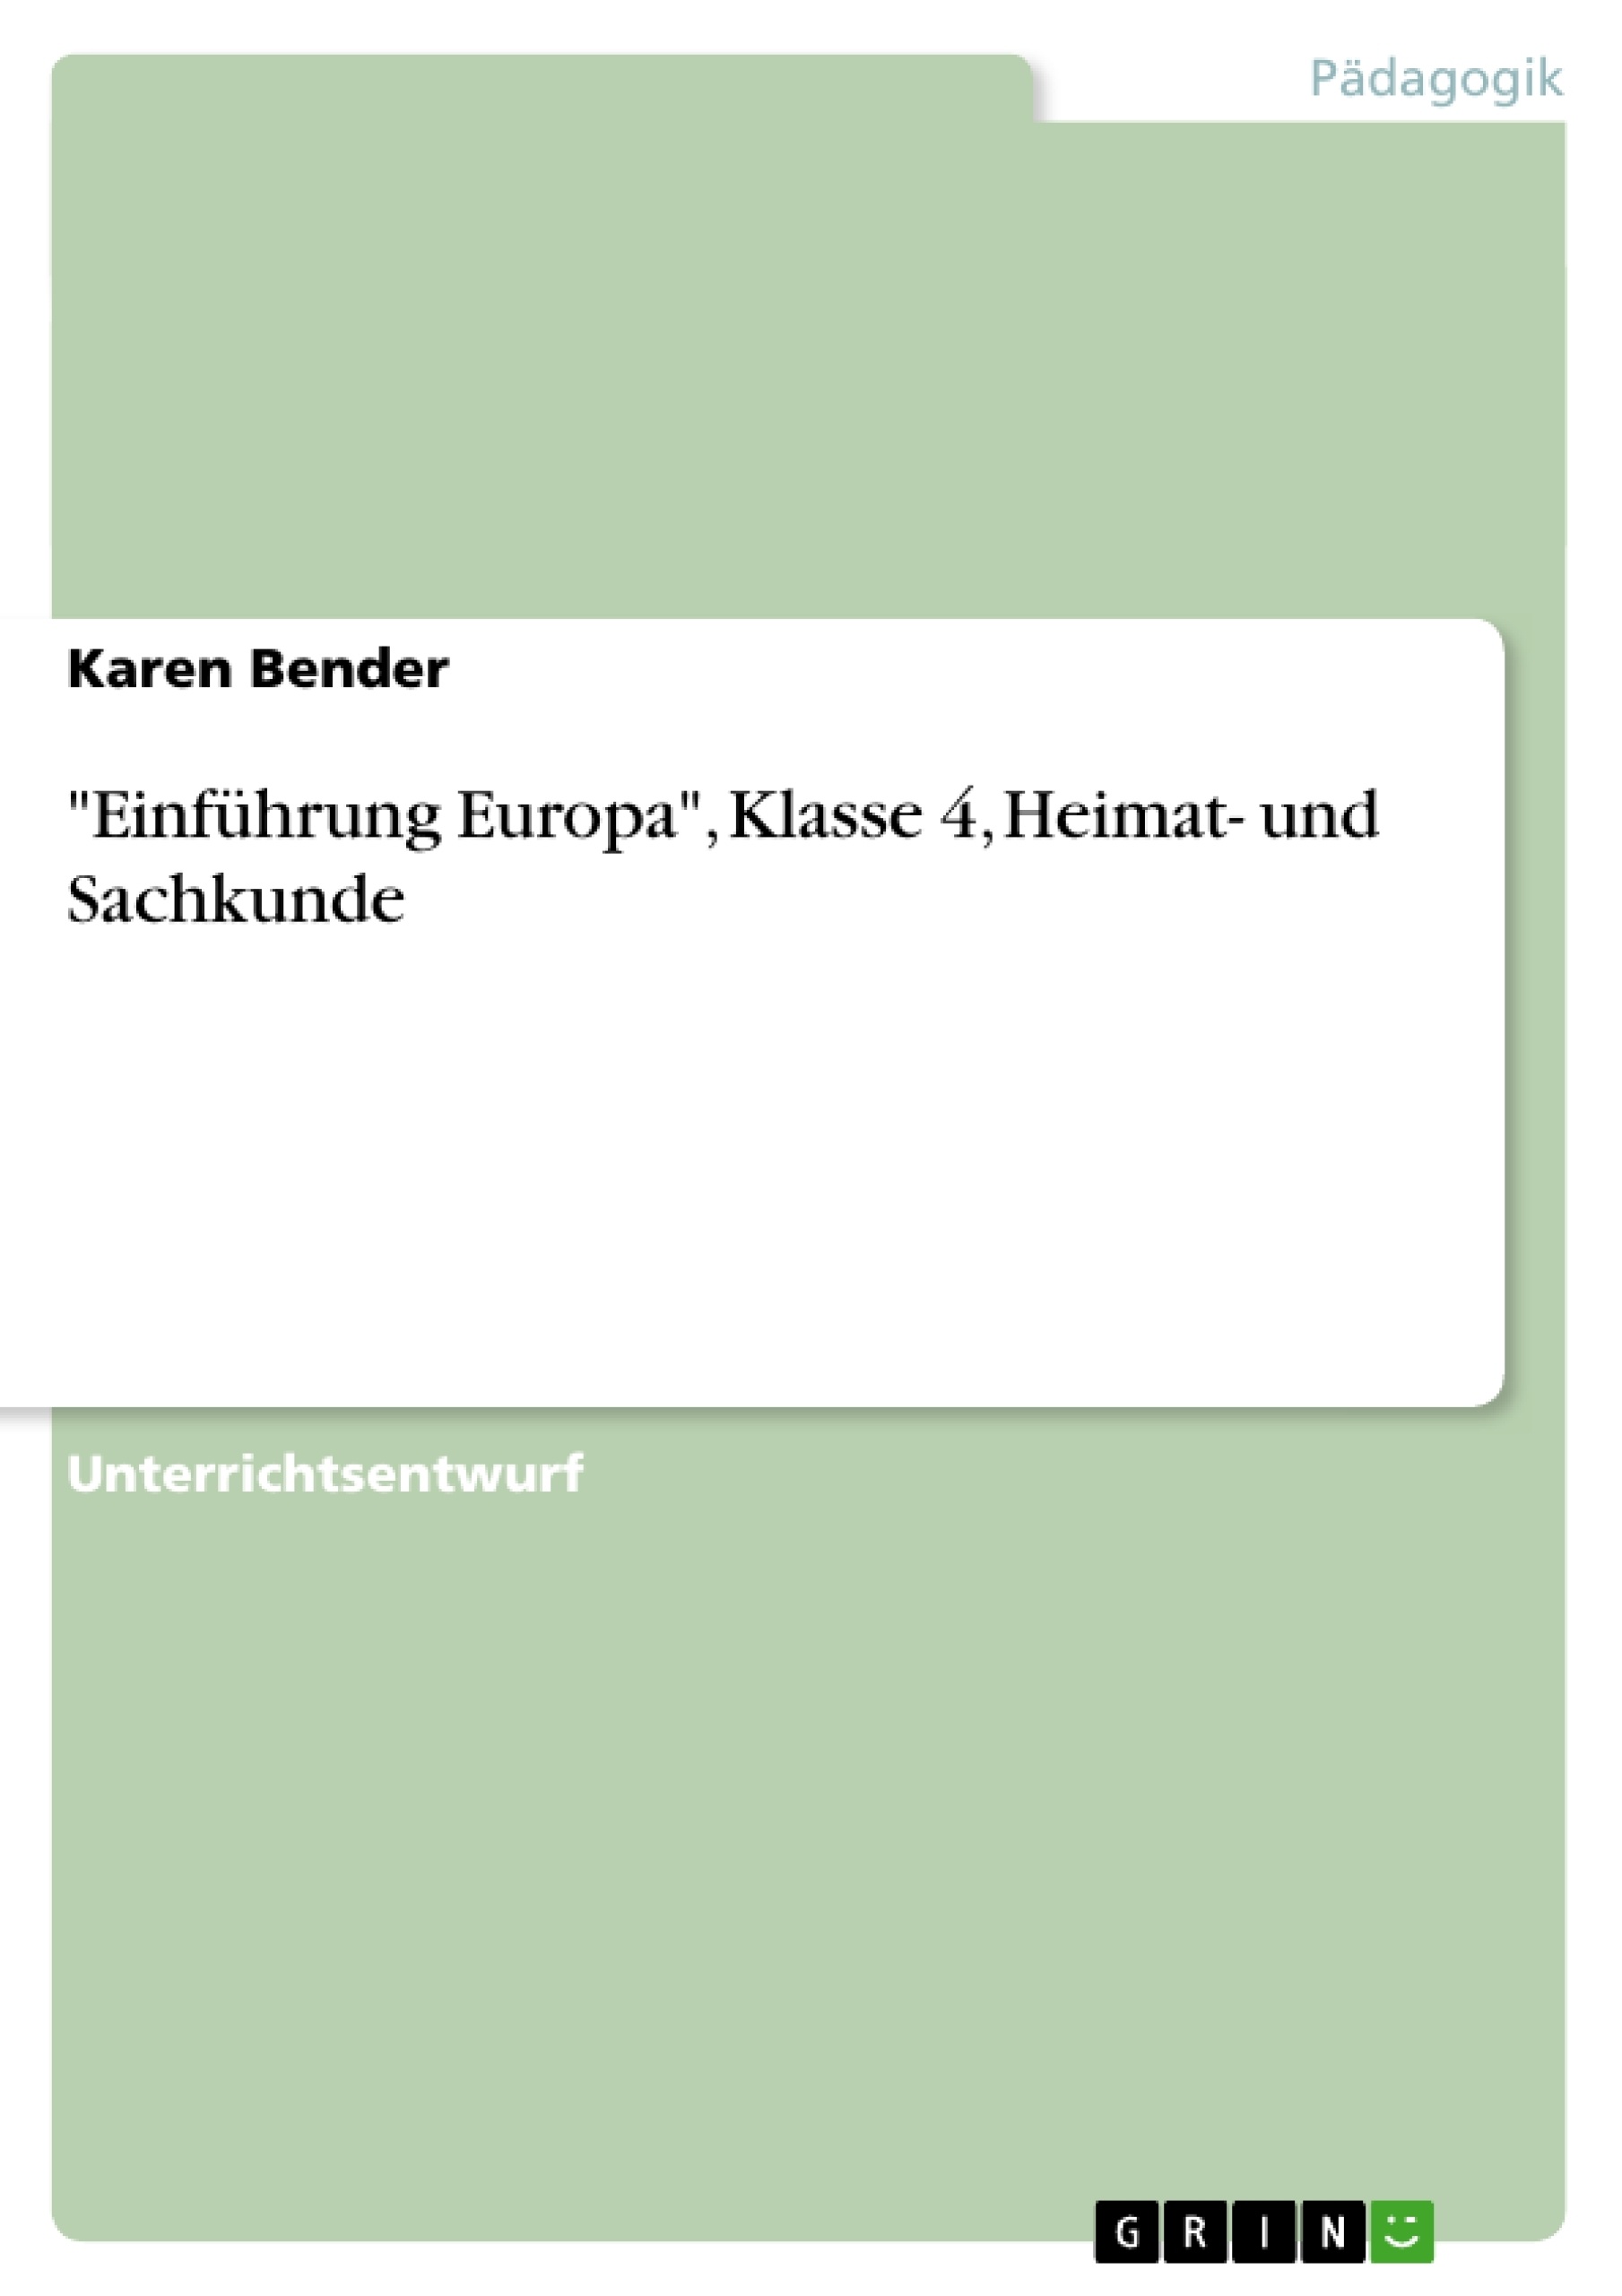 Title: "Einführung Europa", Klasse 4, Heimat- und Sachkunde